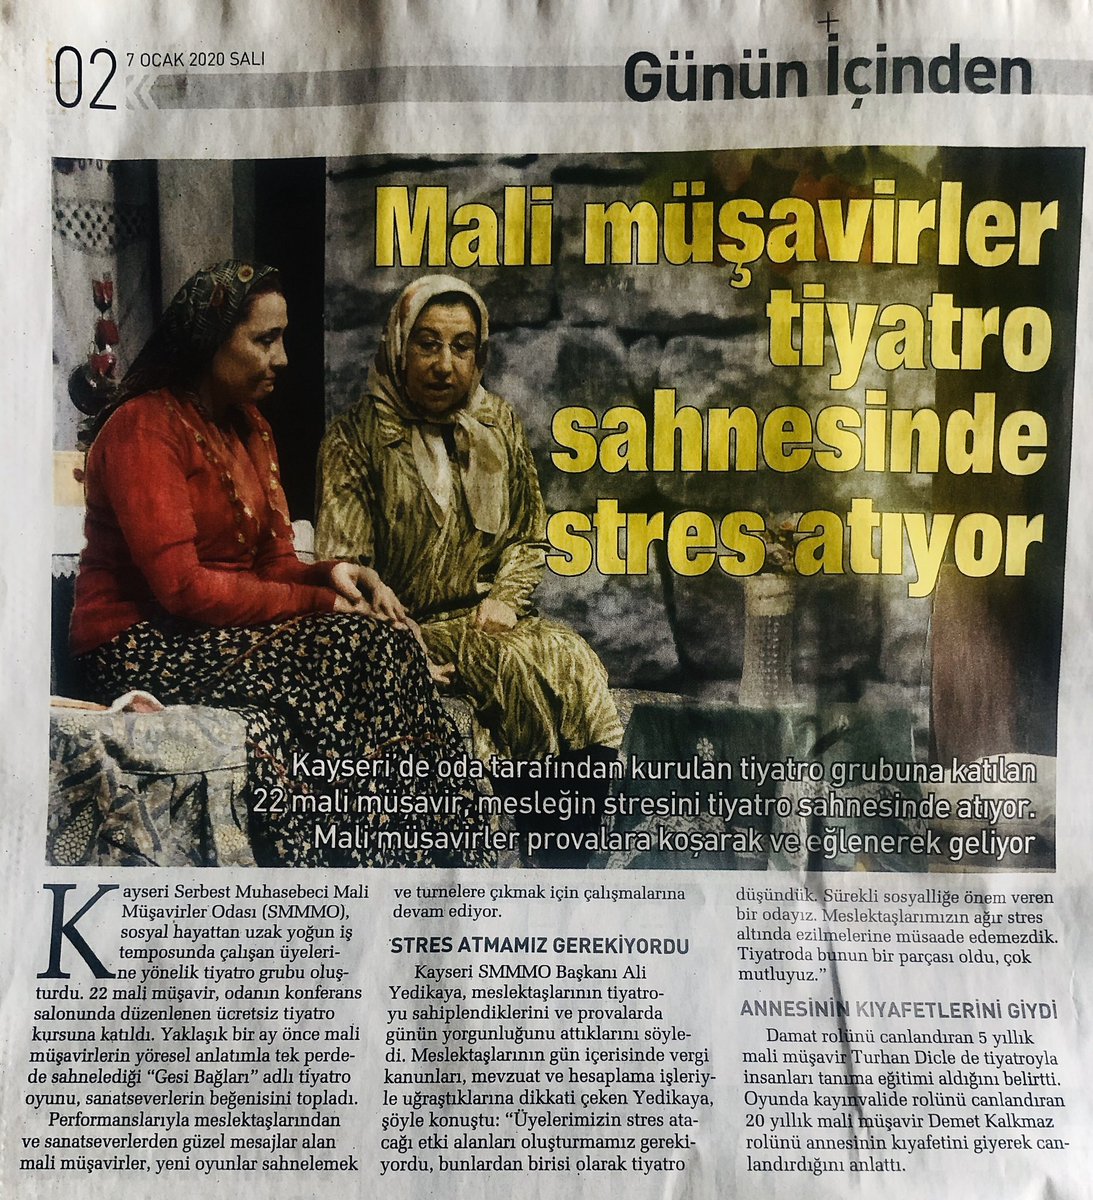 Basında Biz...
Sabah Gazetesi 02. sayfa günün içinden köşesindeyiz.
#sabah #sabahgazetesi #gününiçinden #ksmmmo #gesibağları #tiyatro @Sabah @KayseriMali